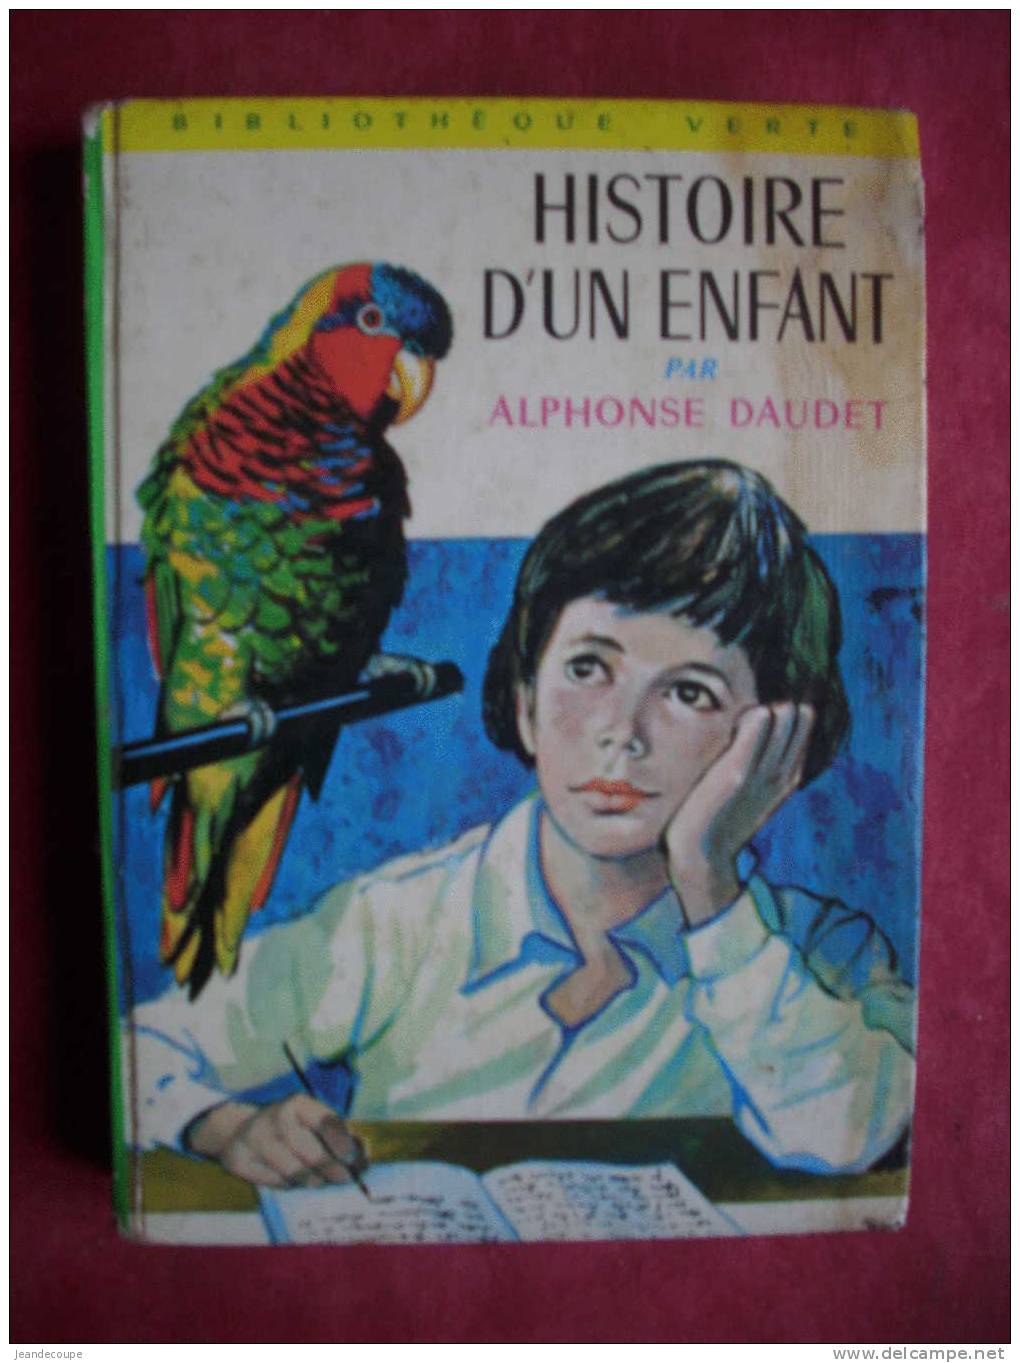 BIBLIOTHEQUE VERTE - Histoire D'un Enfant - Alphonse Daudet - Illustration ( Francois Battet ) 1968 - Bibliotheque Verte